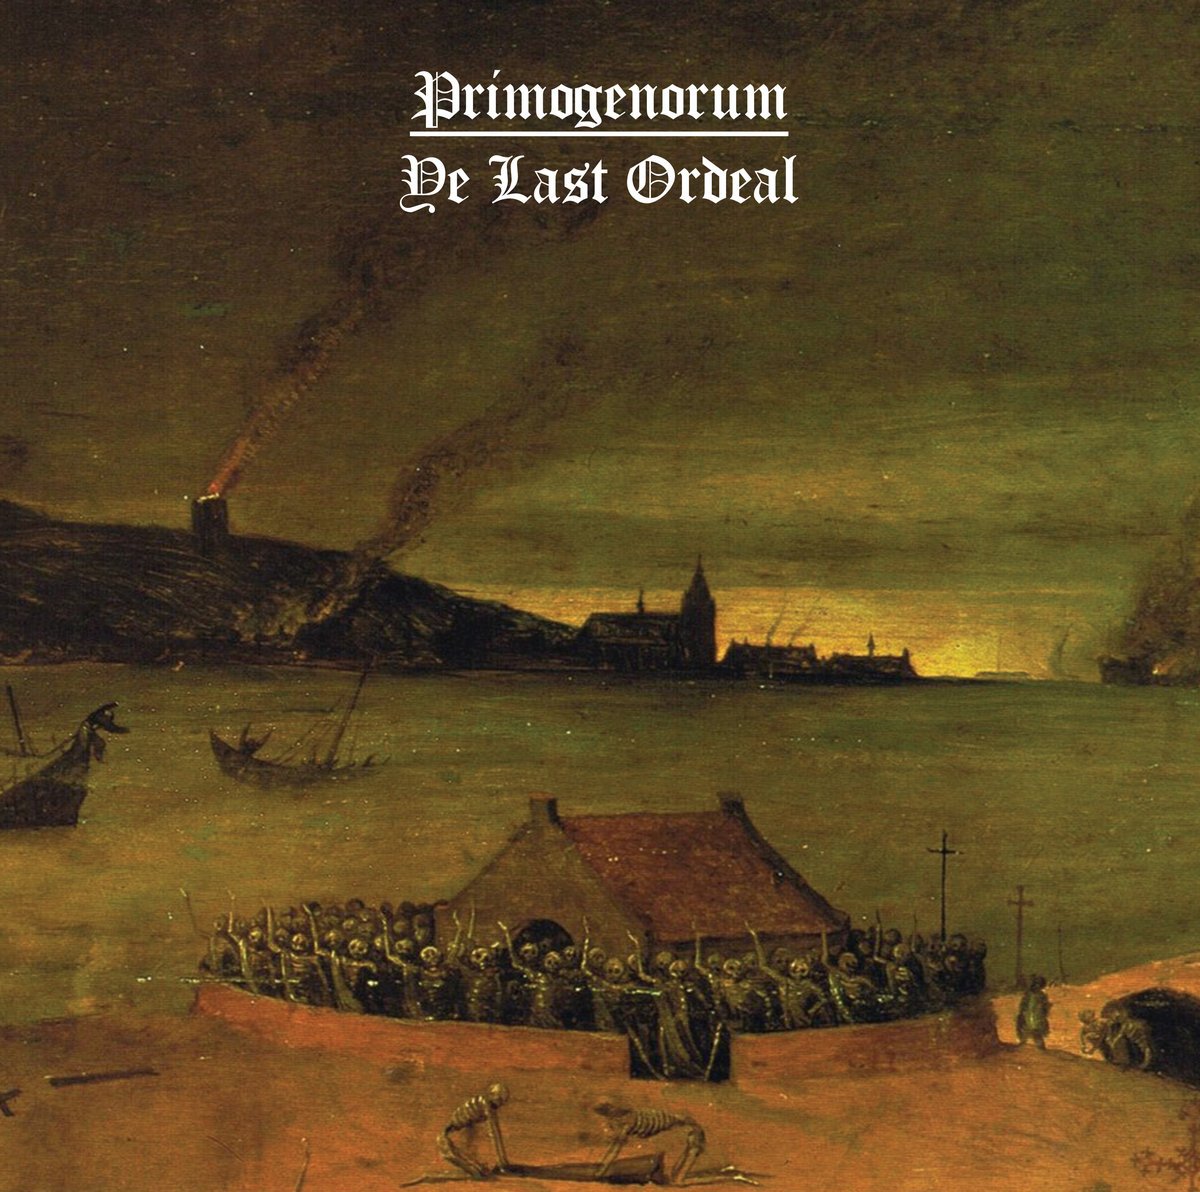 Primogenorum - Ye Last Ordeal (2019) FLAC Download